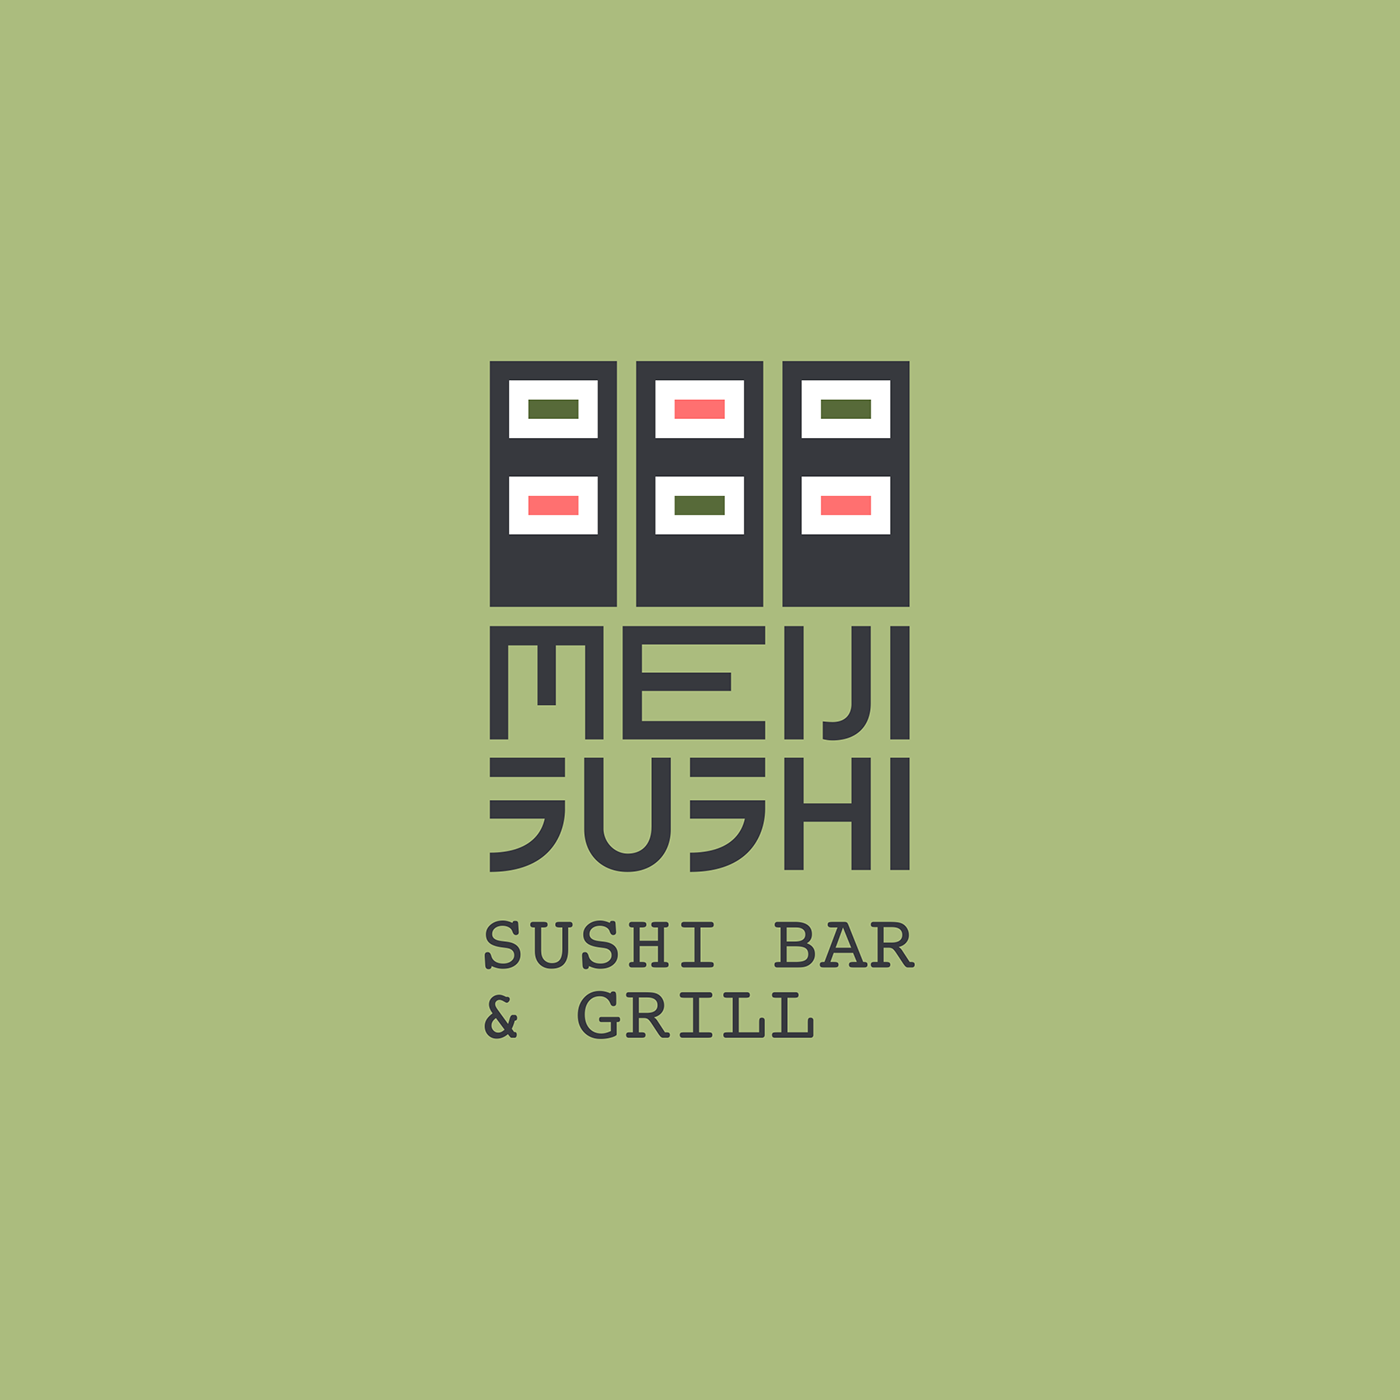 Sushi restaurant branding  logo simple Full Sail GRDBS december2018